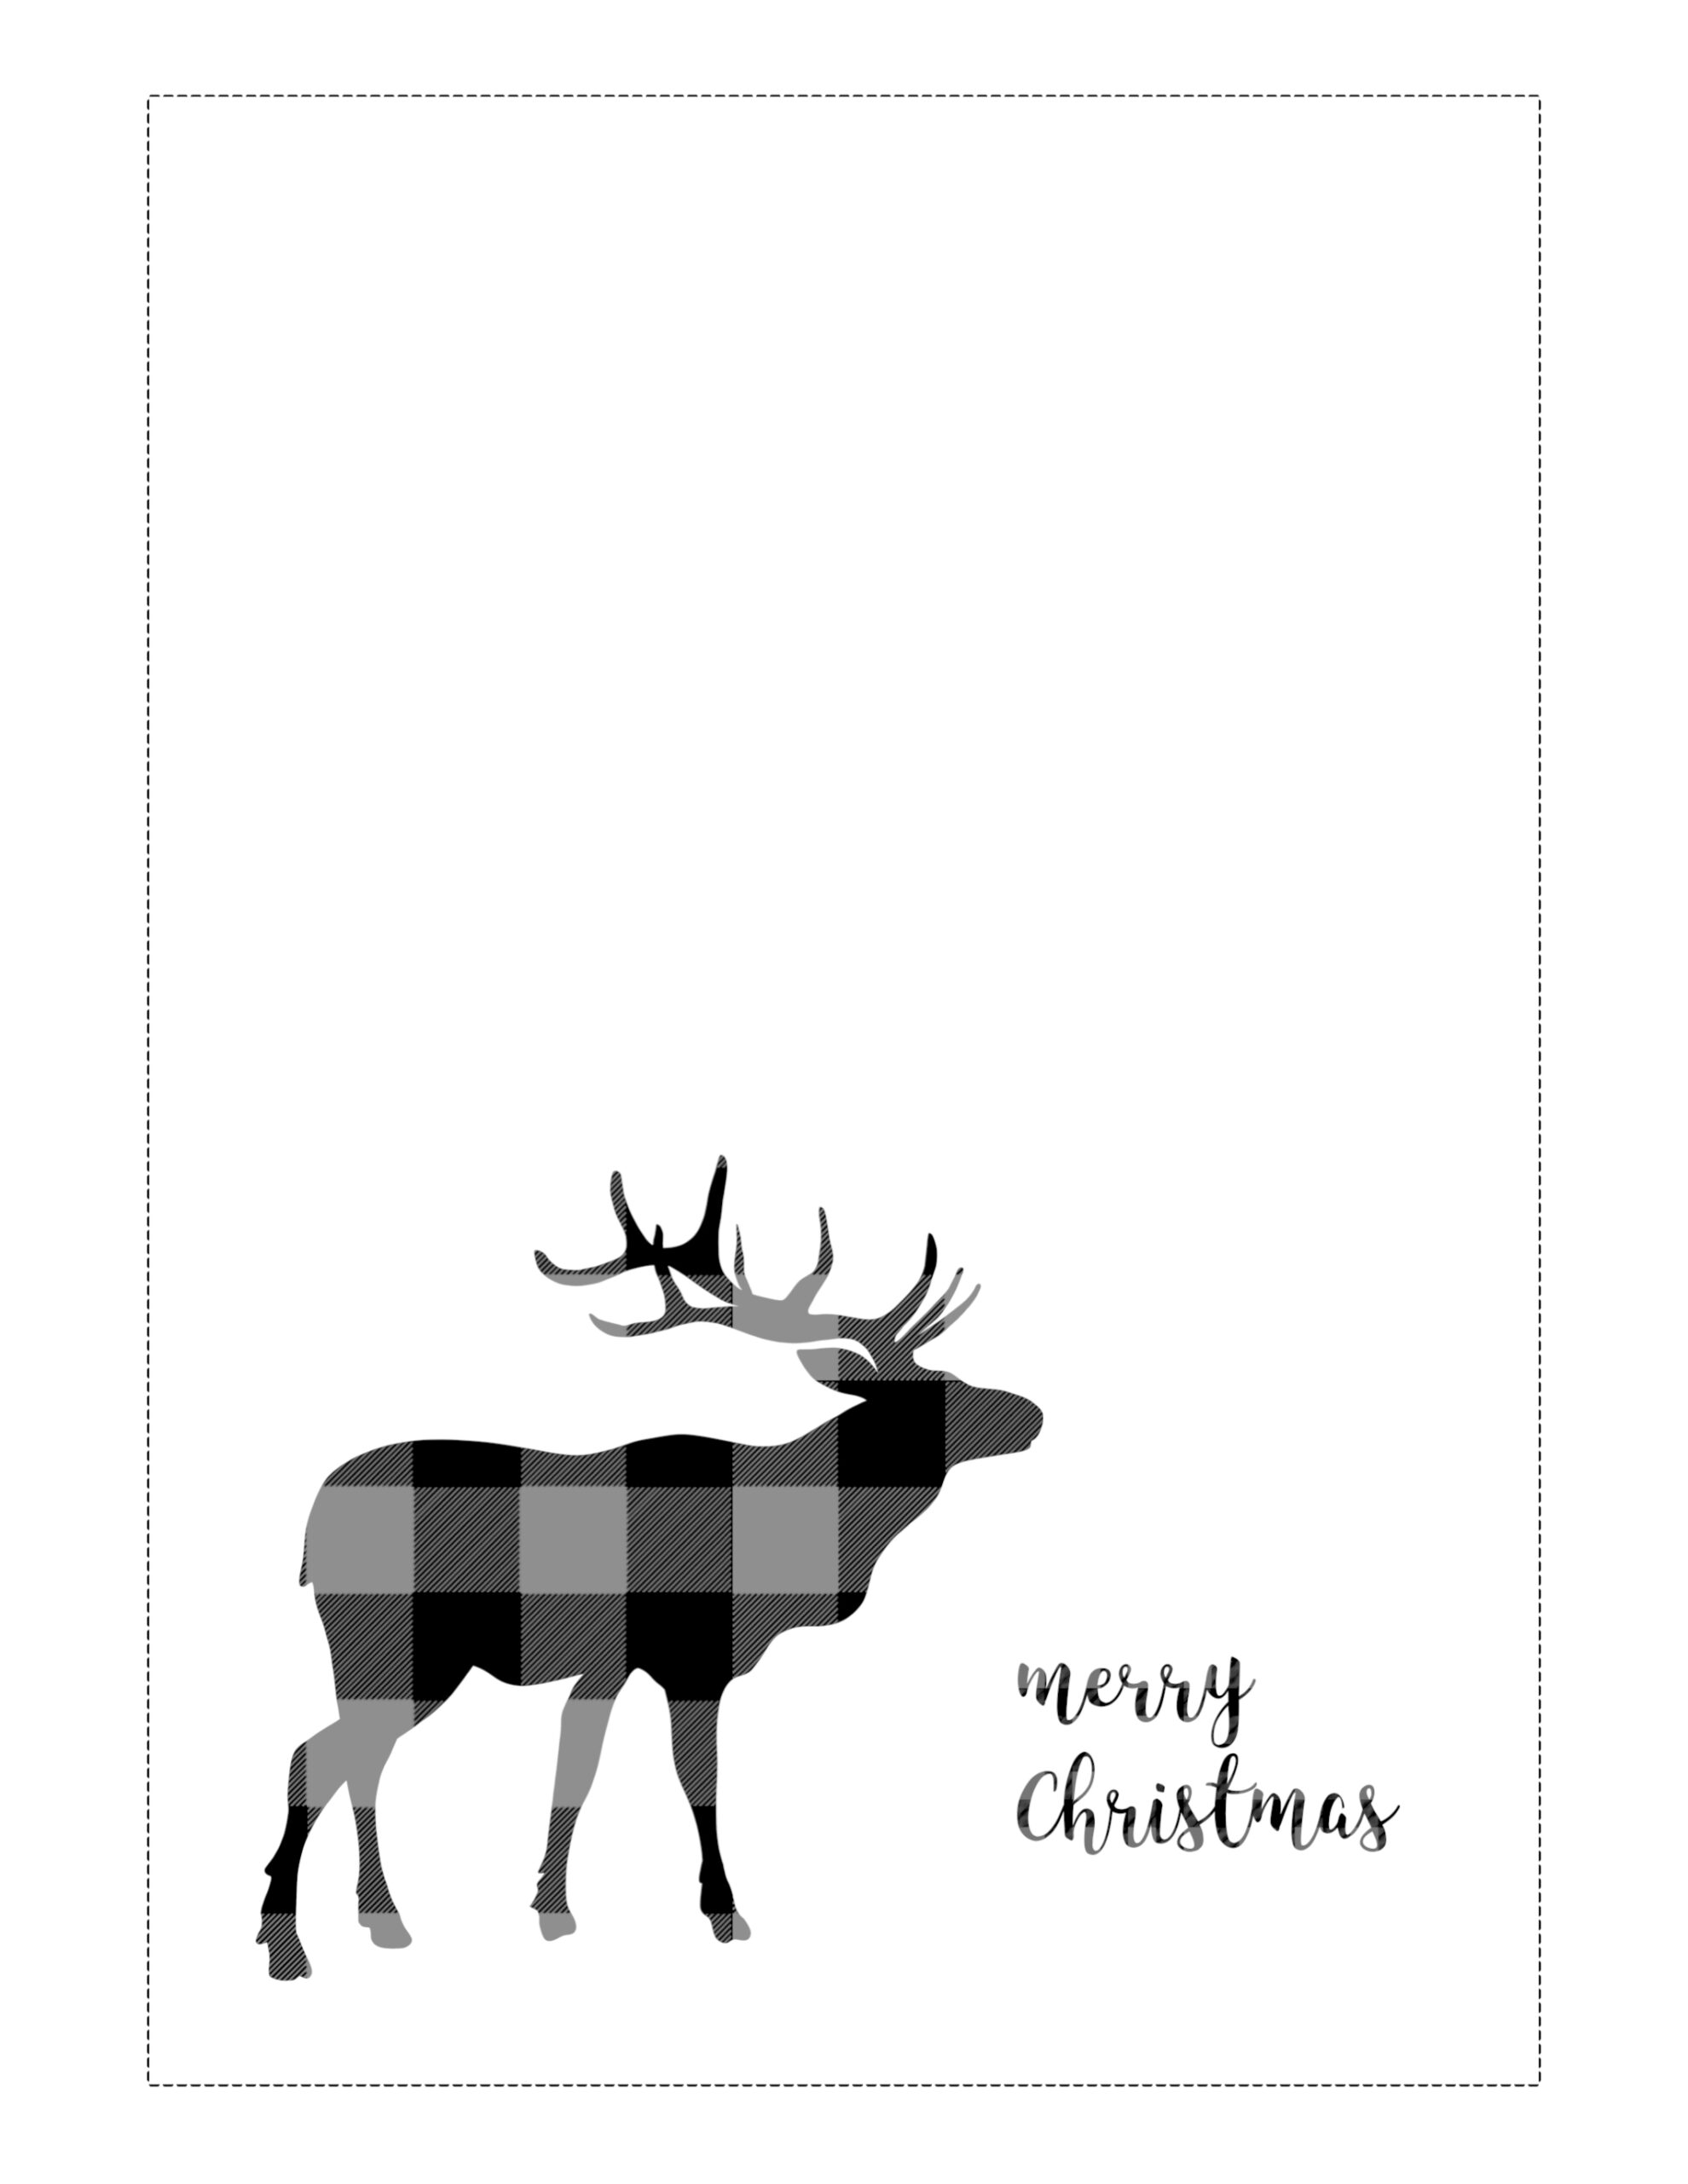 printable-online-christmas-card-maker-free-printable-templates